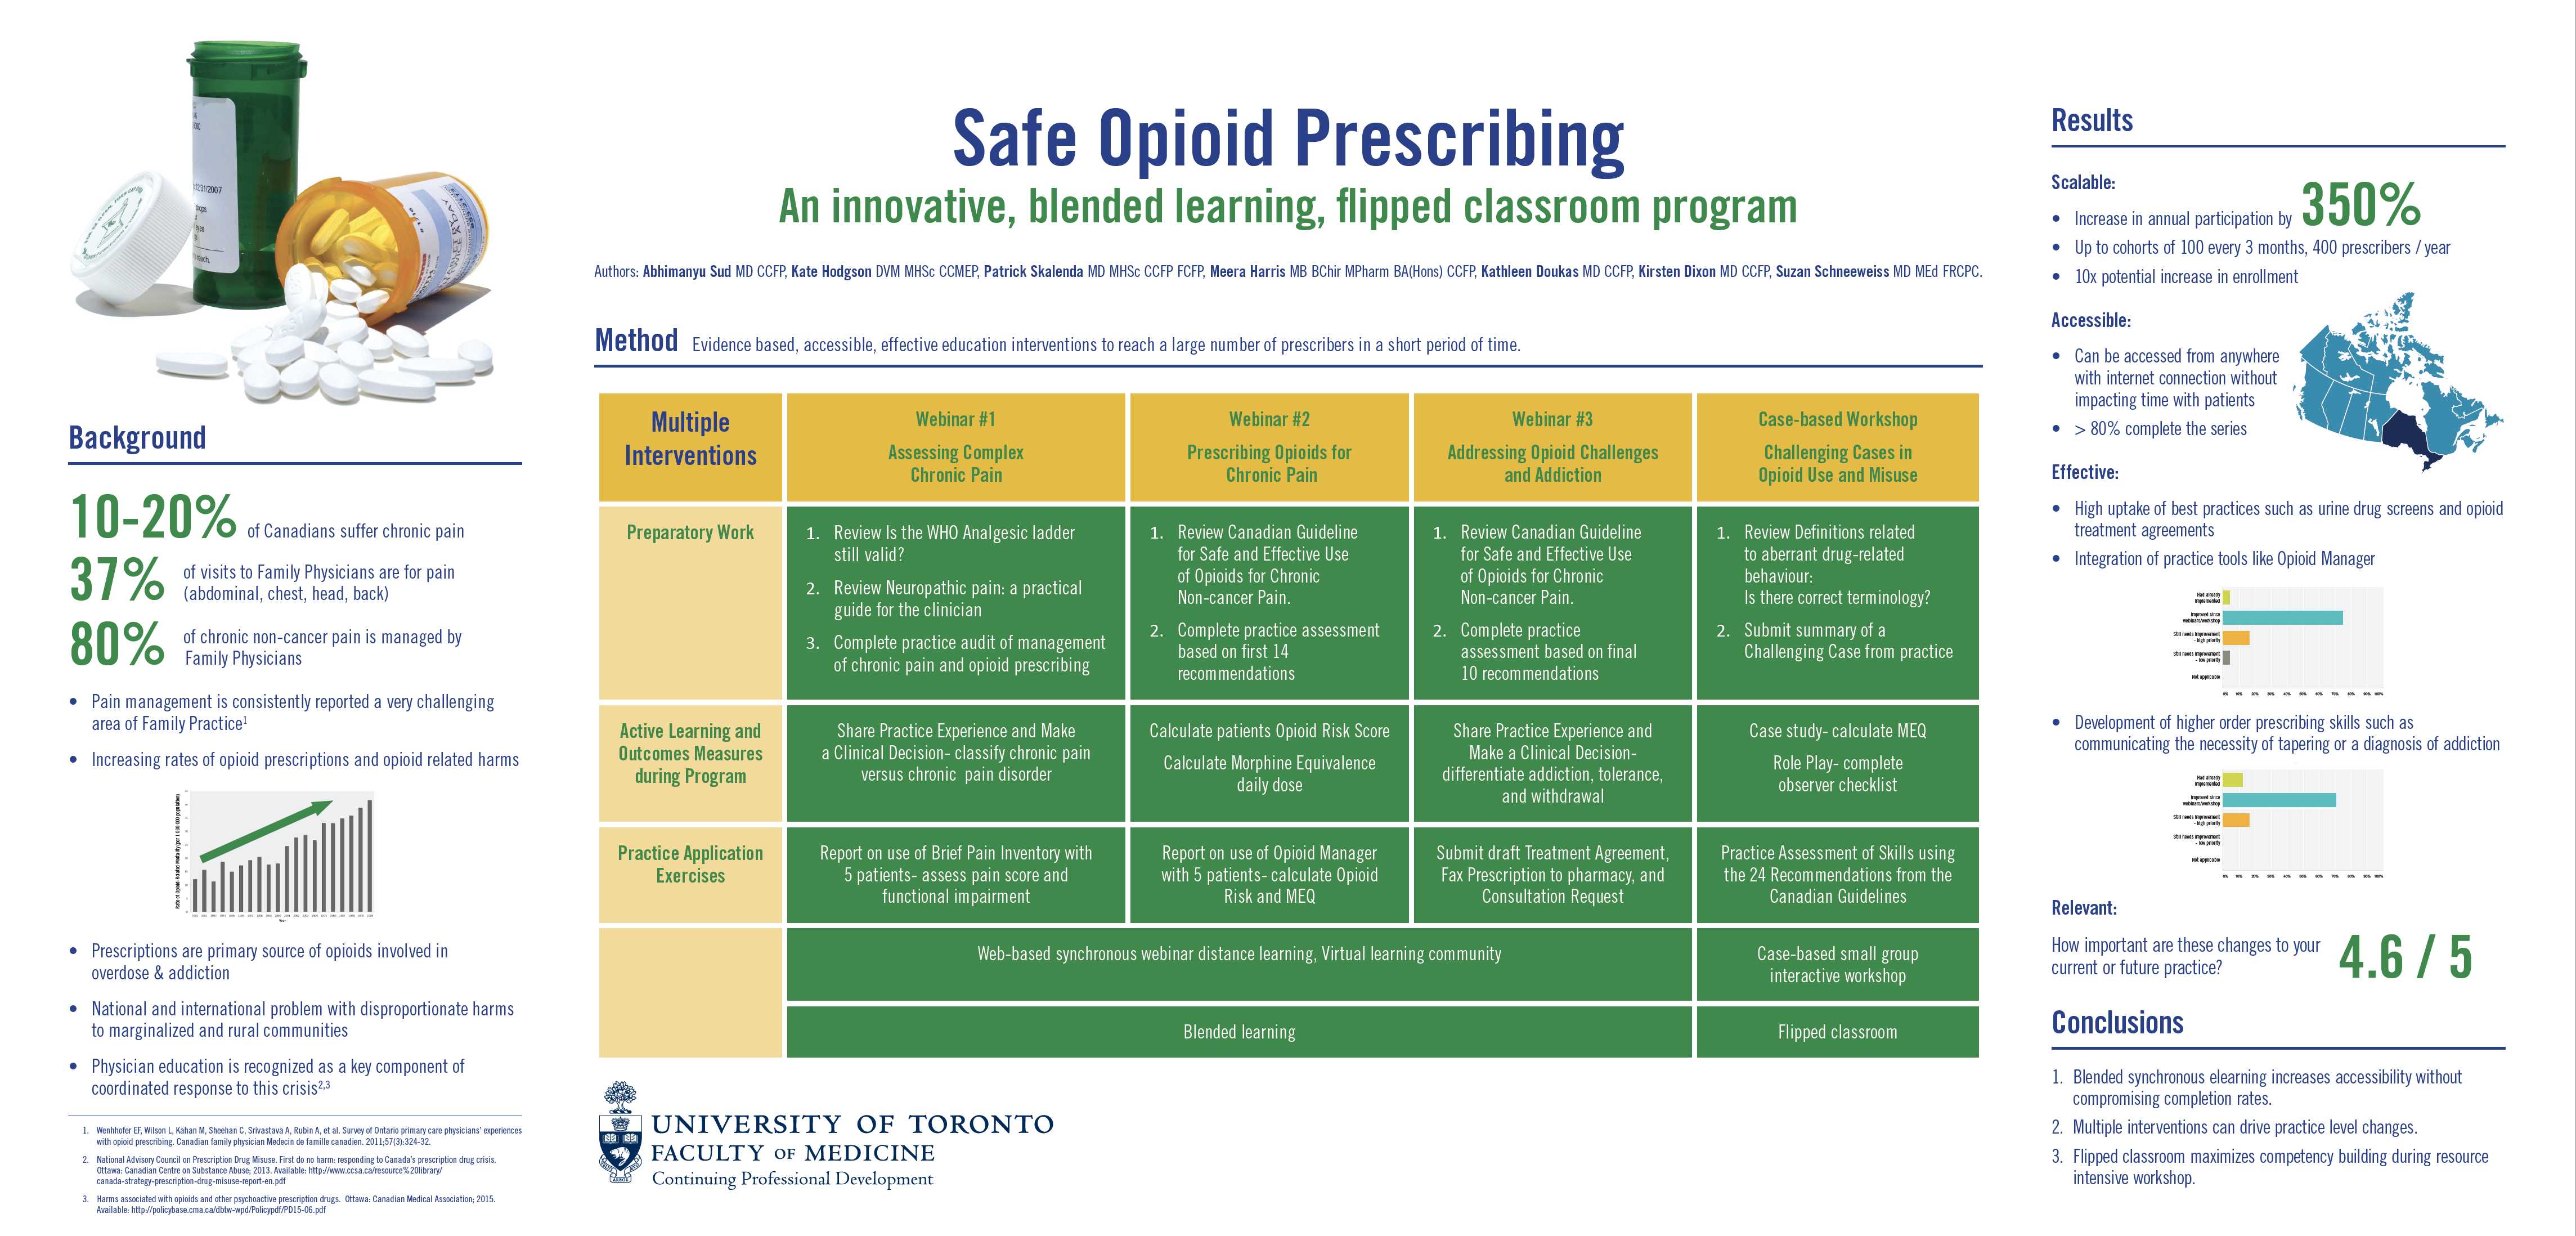 Safe Opioid Prescribing poster